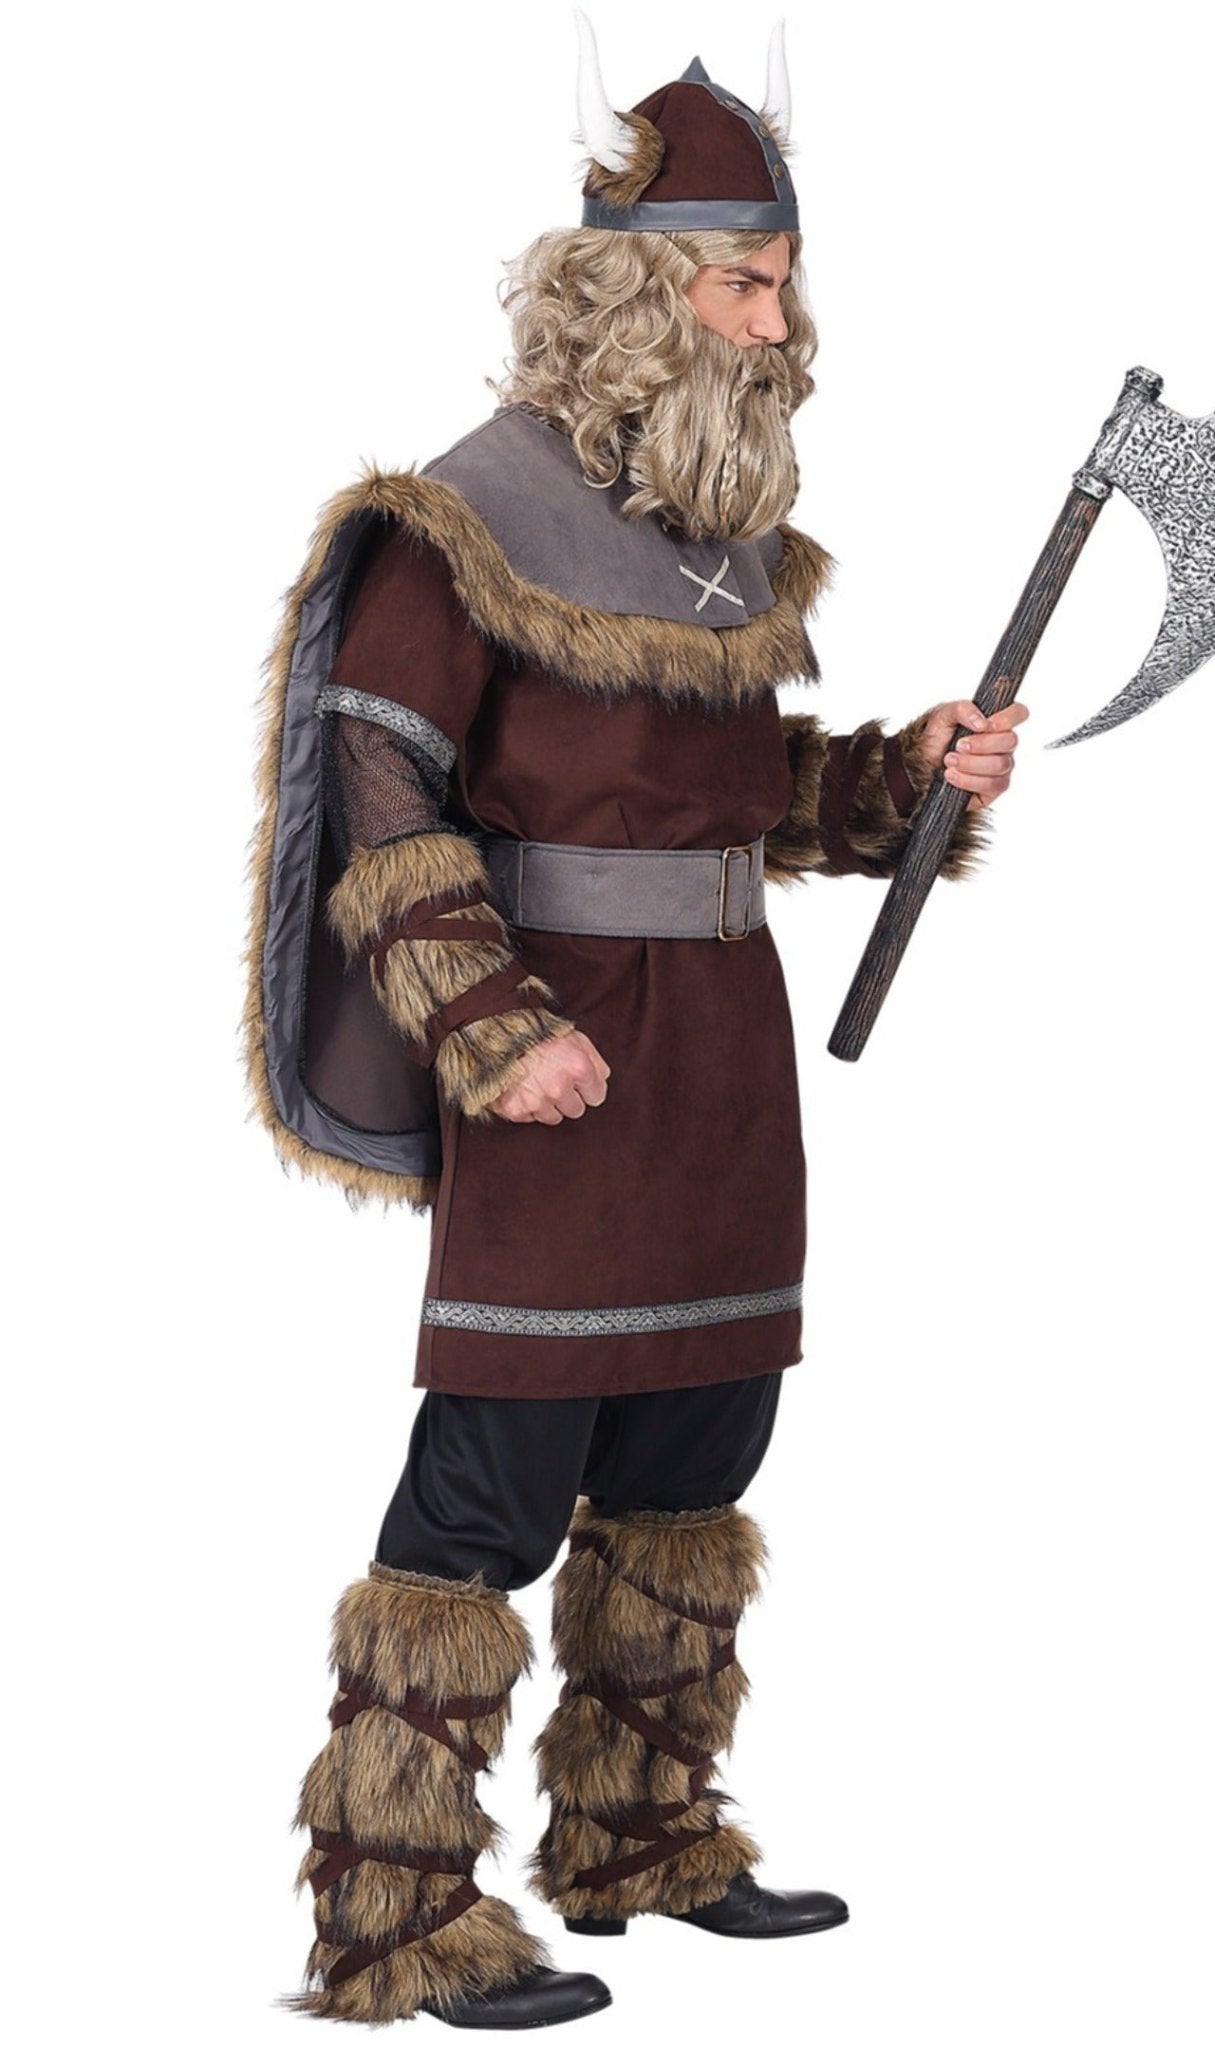 Disfraces de Vikingos originales